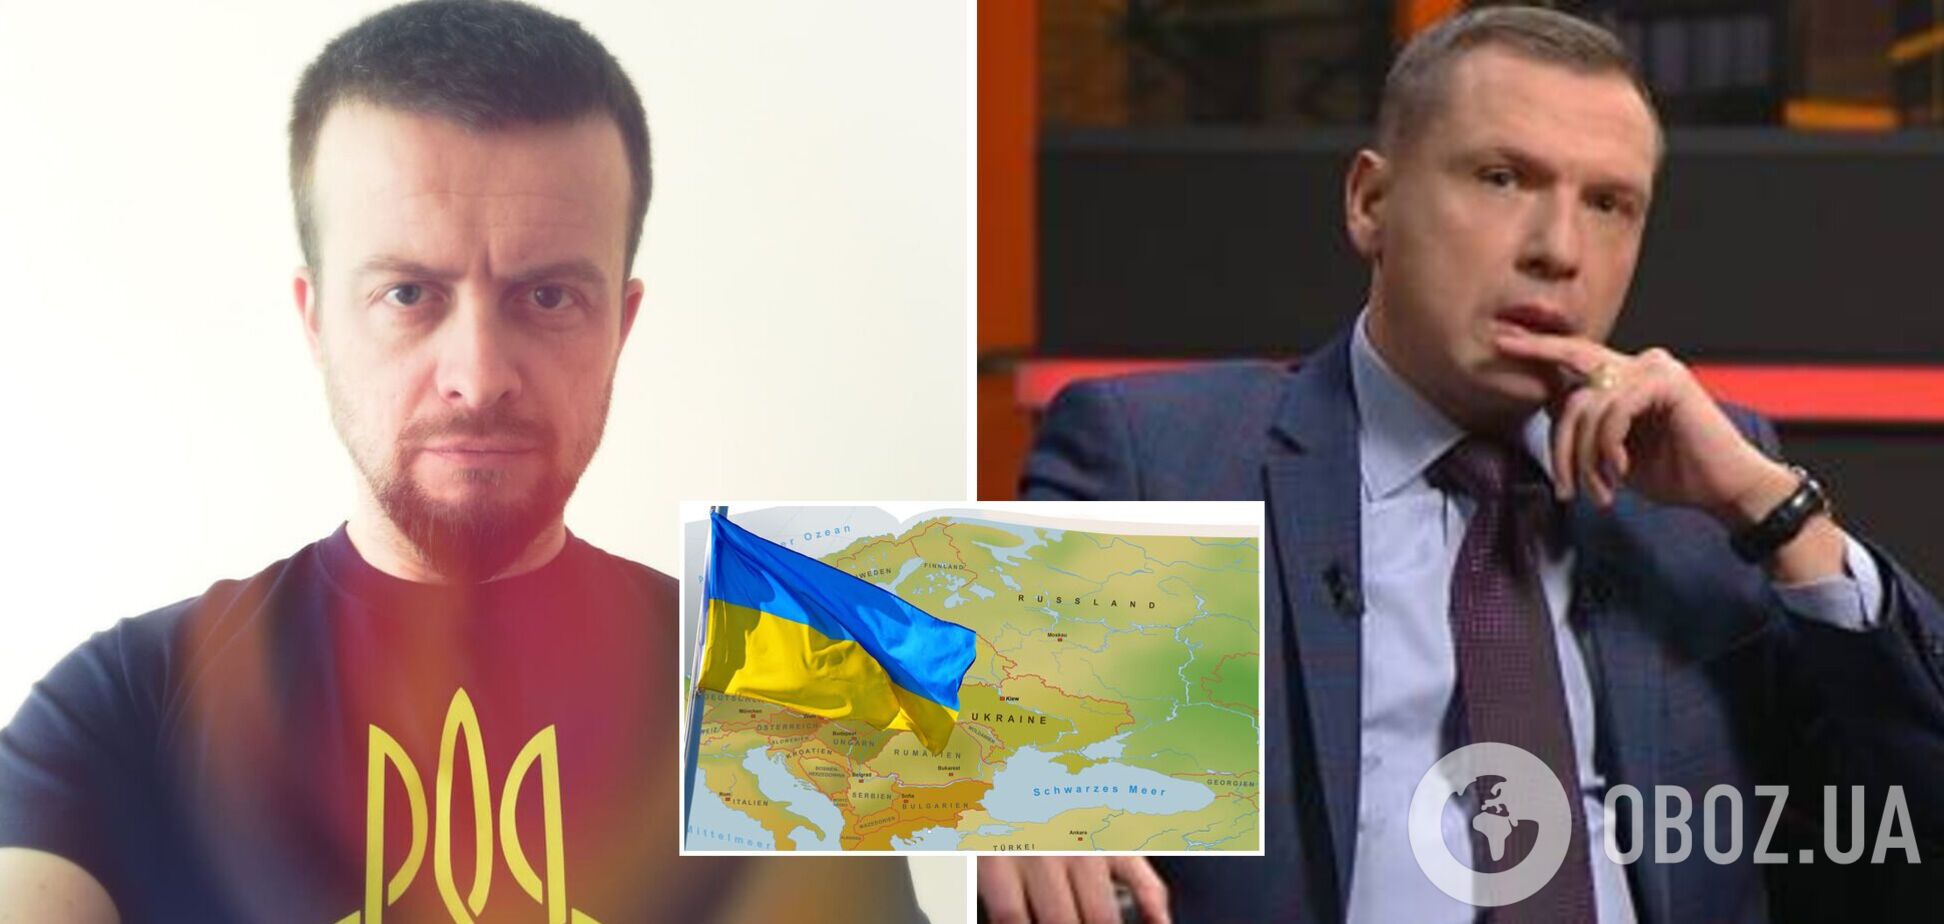 Білоруський пропагандист Щокін не зміг пояснити свої слова, що України не існує, і 'напав' на ведучого